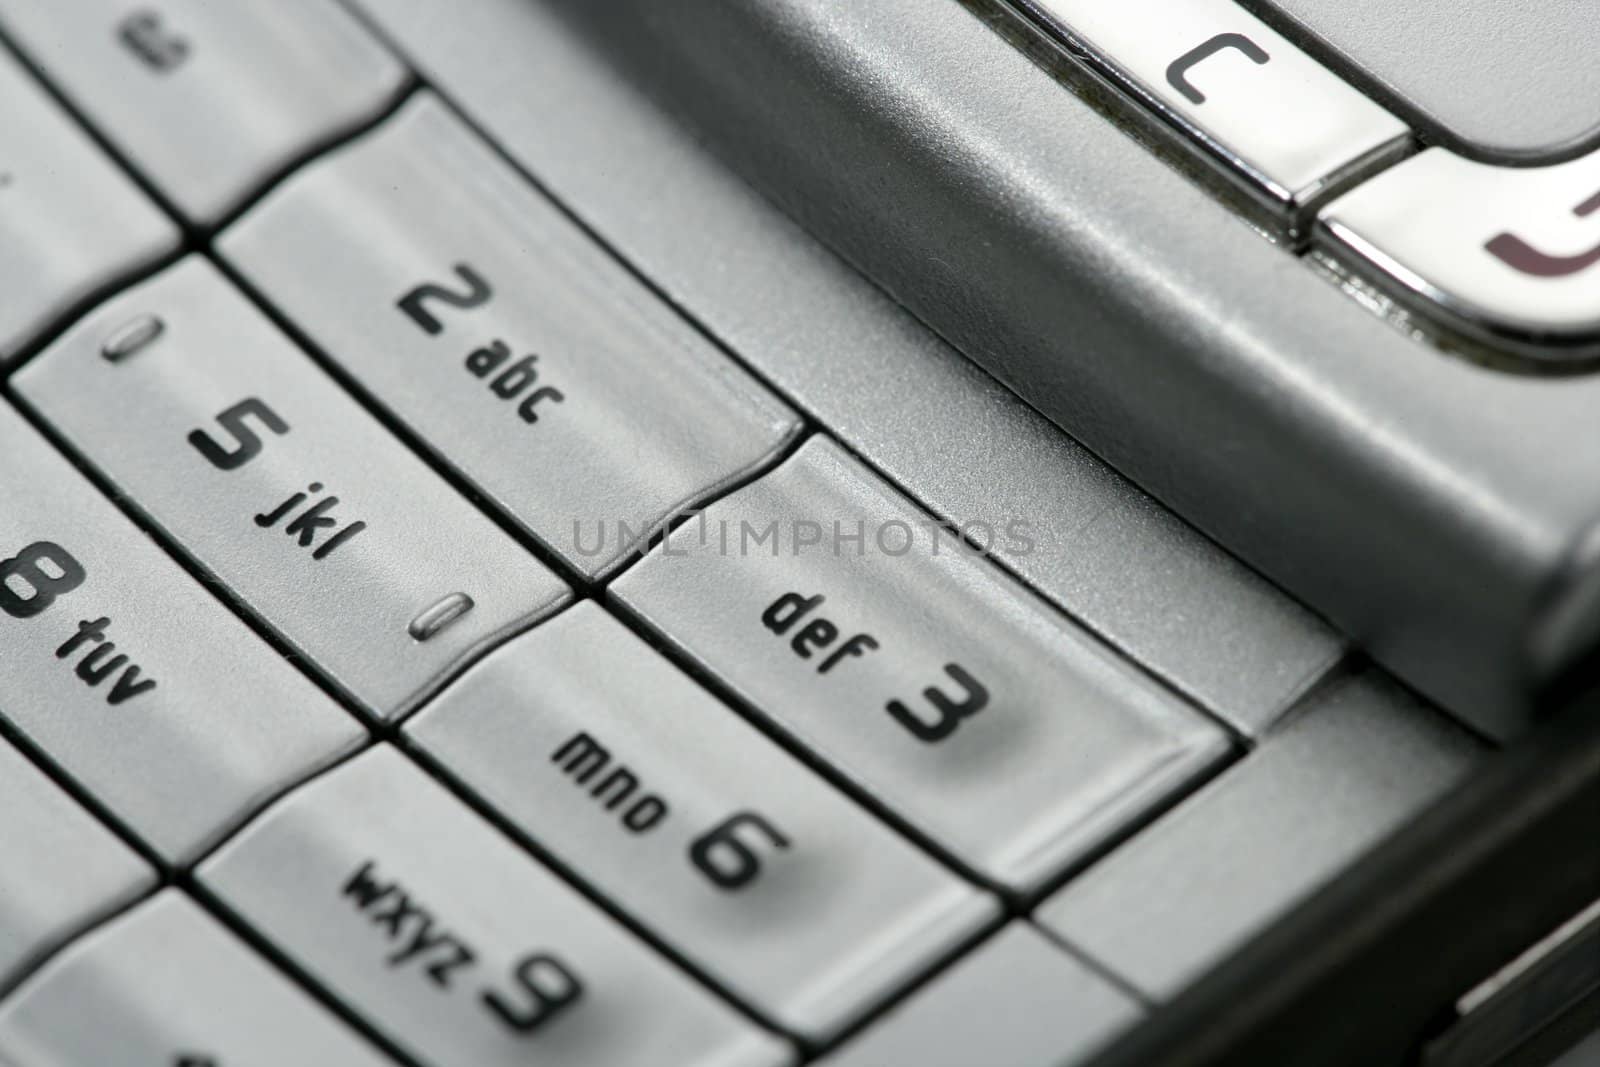 Mobile phone macro keyboard detail by lunamarina